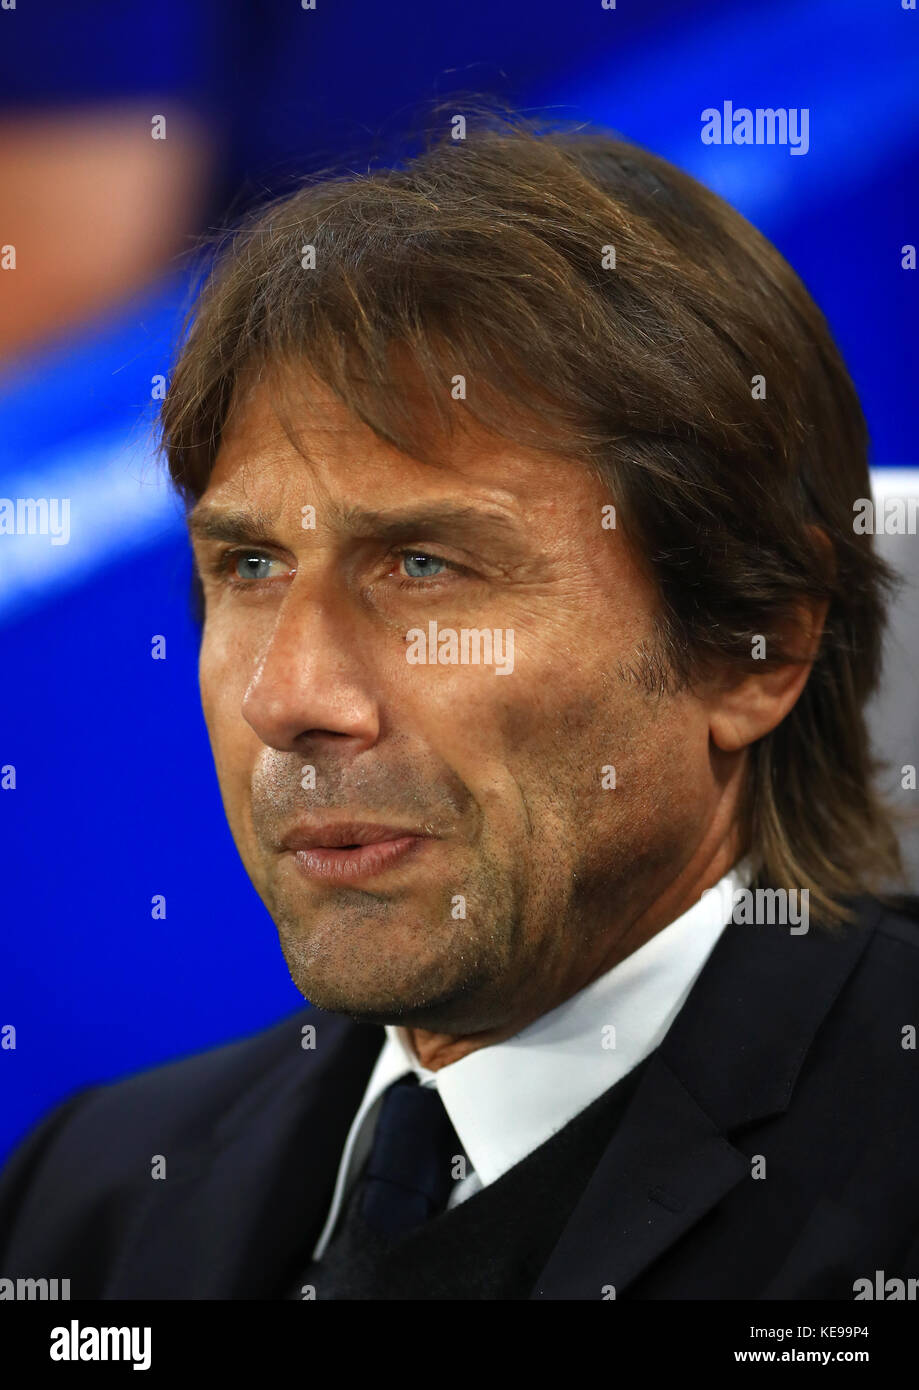 Antonio Conte, directeur de Chelsea, lors du match du groupe C de l'UEFA Champions League à Stamford Bridge, Londres. Banque D'Images